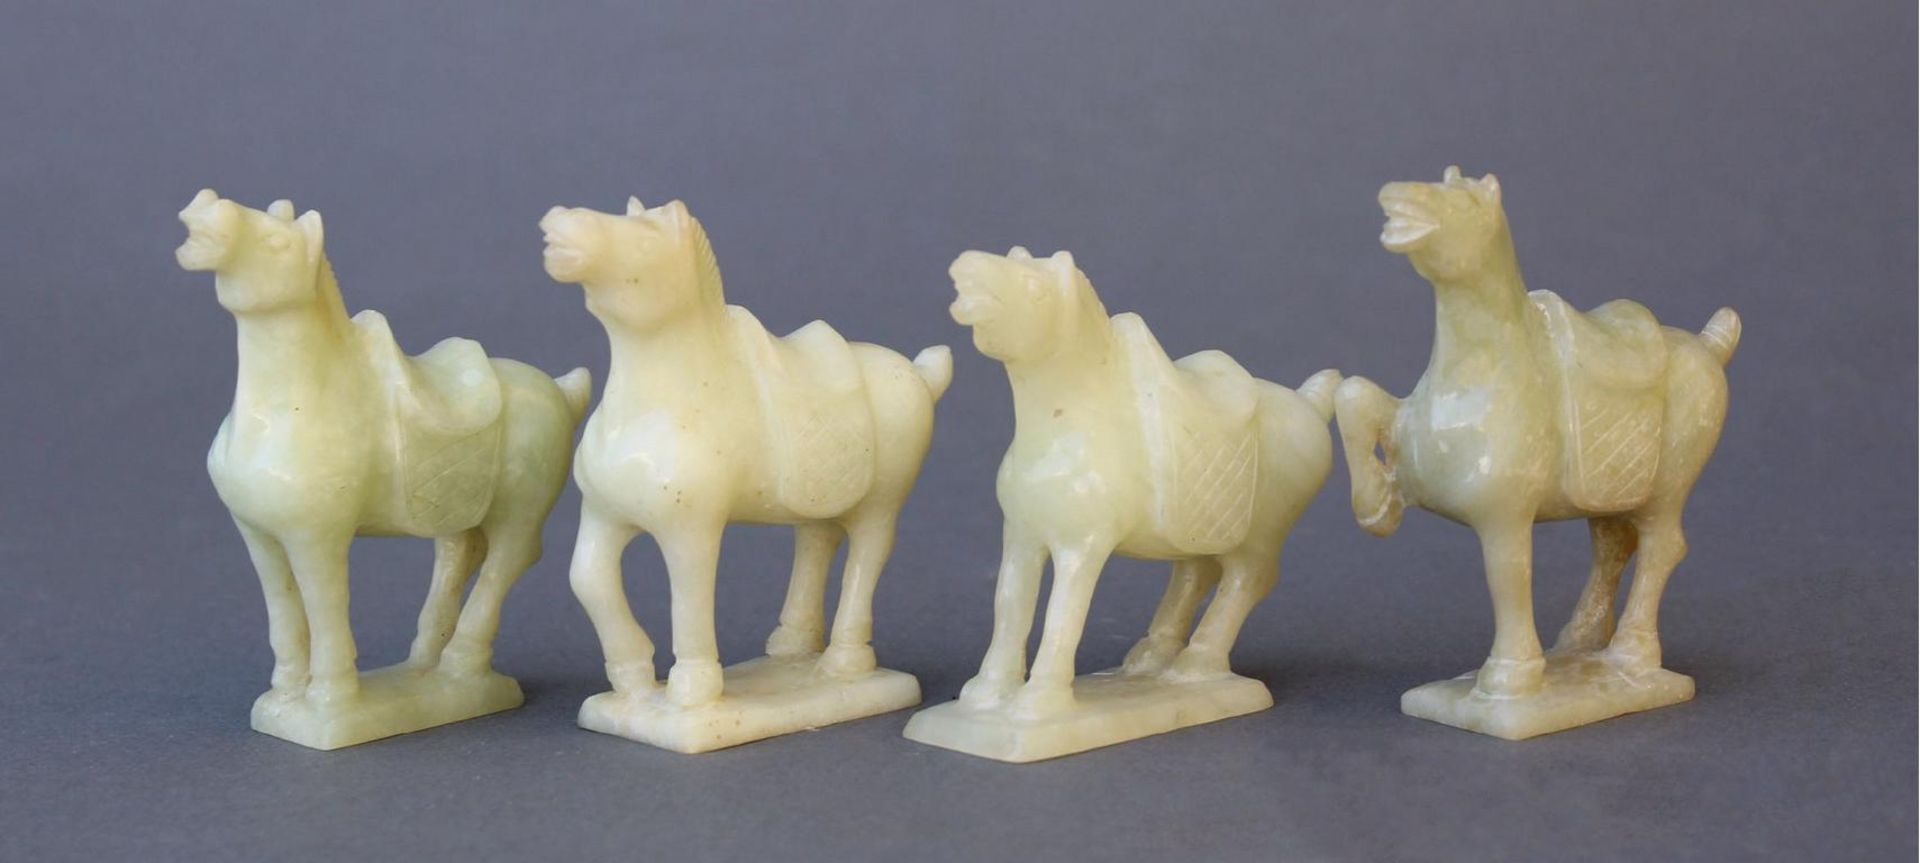 Vier Kleine PferdefigurenChina 20. Jahrhundert, grüne Jade geschnitzt, gesatteltes Pferd auf